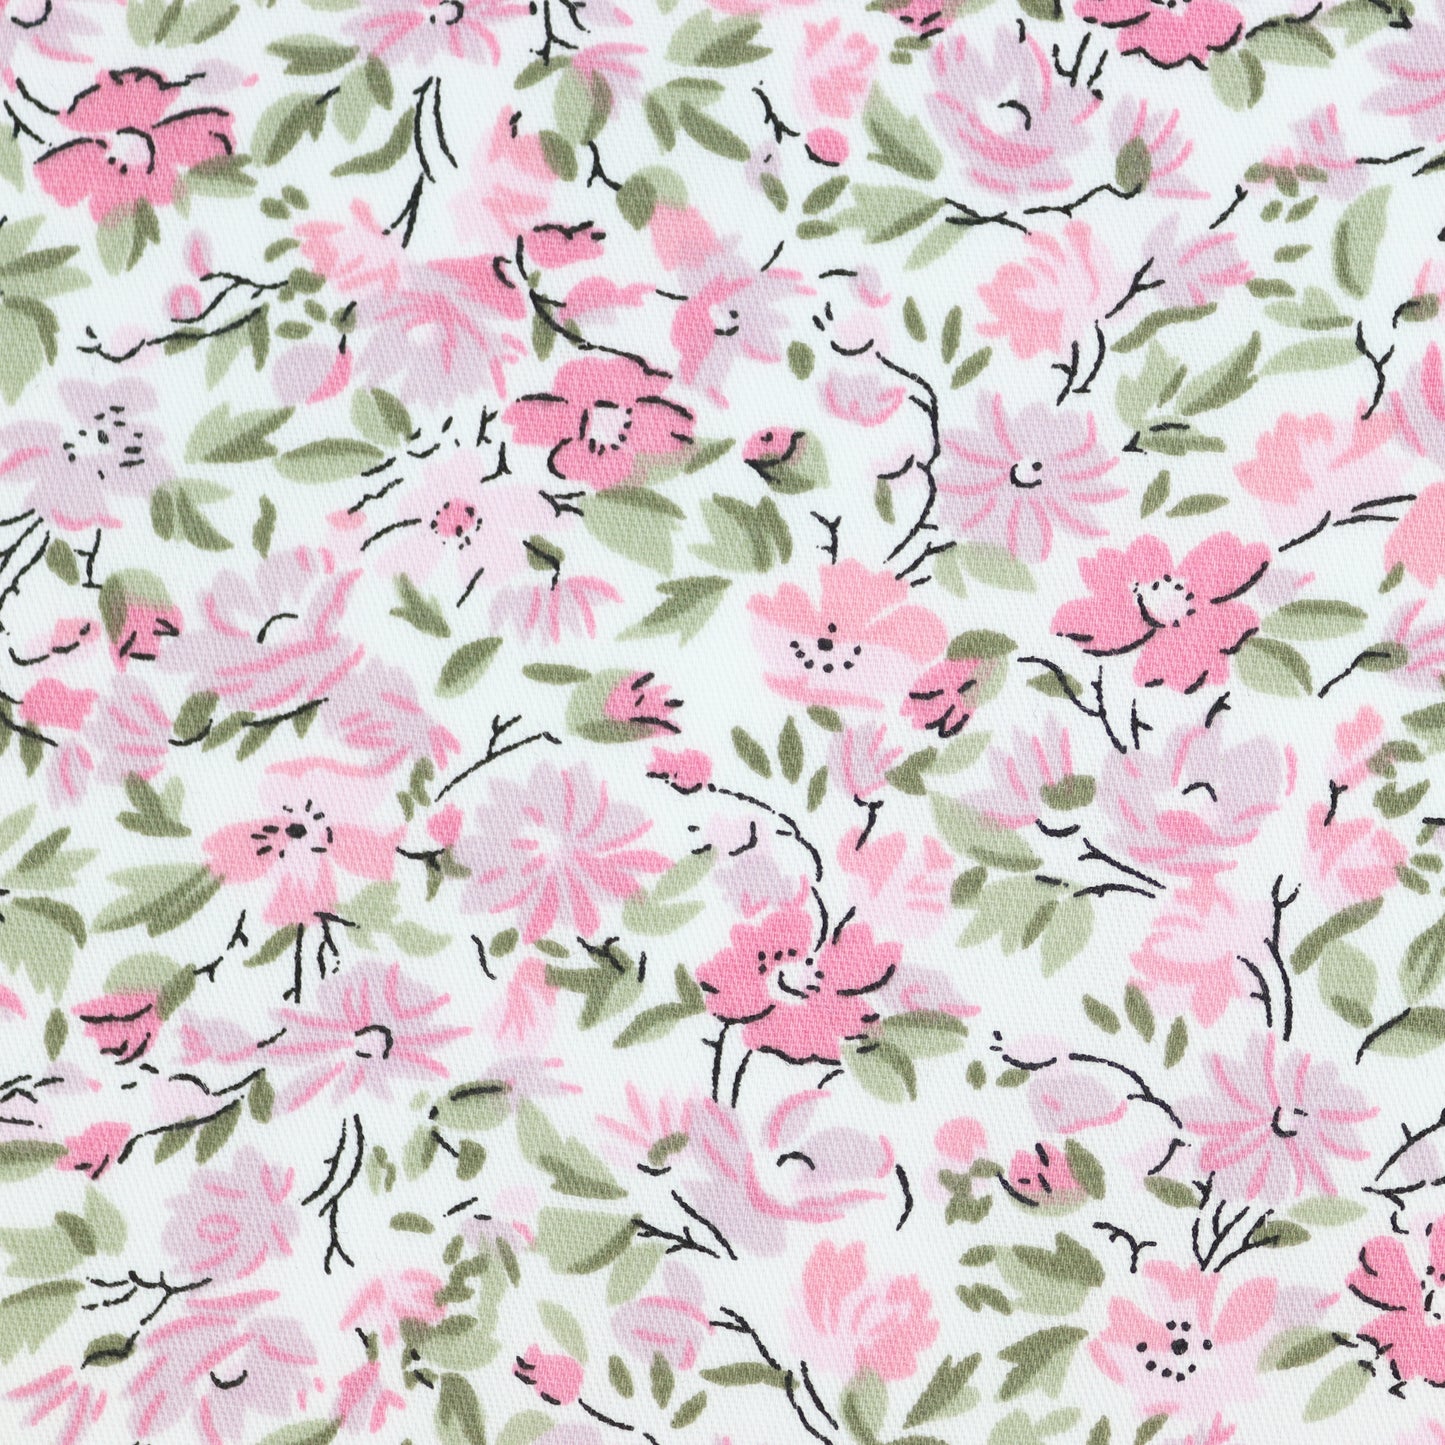 100% Cotton Floral Print Tie - Pink